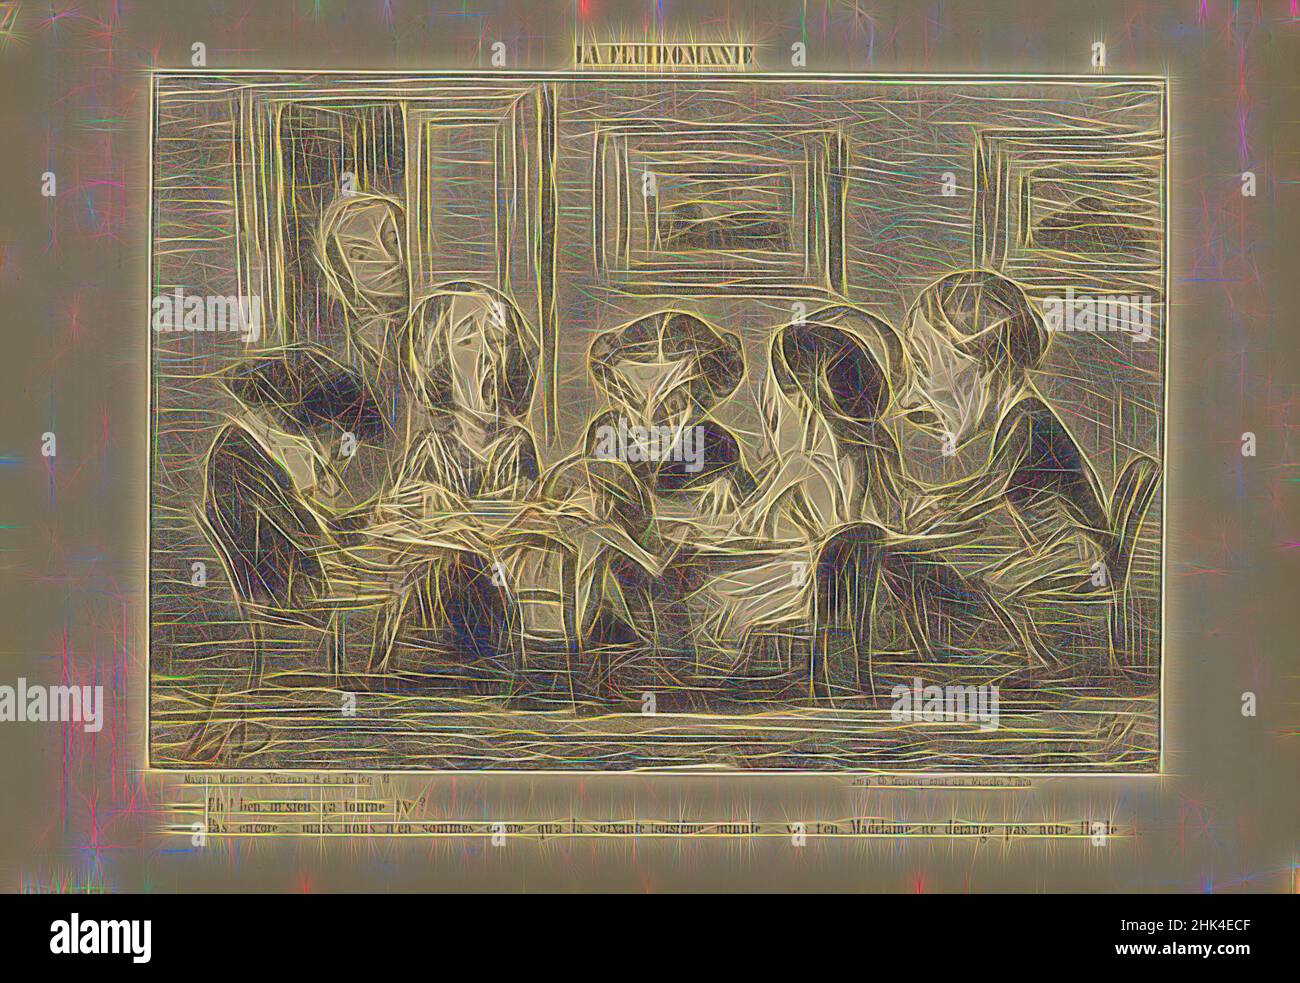 Inspiriert von eh! Bien M'sieu, Ça Tourne T'y?..., Honoré Daumier, Französisch, 1808-1879, Lithographie auf Zeitungspapier, Frankreich, 16.-17. Mai 1853, Blatt: 9 9/16 x 14 Zoll, 24,3 x 35,6 cm, neu gestaltet von Artotop. Klassische Kunst neu erfunden mit einem modernen Twist. Design von warmen fröhlichen Leuchten der Helligkeit und Lichtstrahl Strahlkraft. Fotografie inspiriert von Surrealismus und Futurismus, umarmt dynamische Energie der modernen Technologie, Bewegung, Geschwindigkeit und Kultur zu revolutionieren Stockfoto